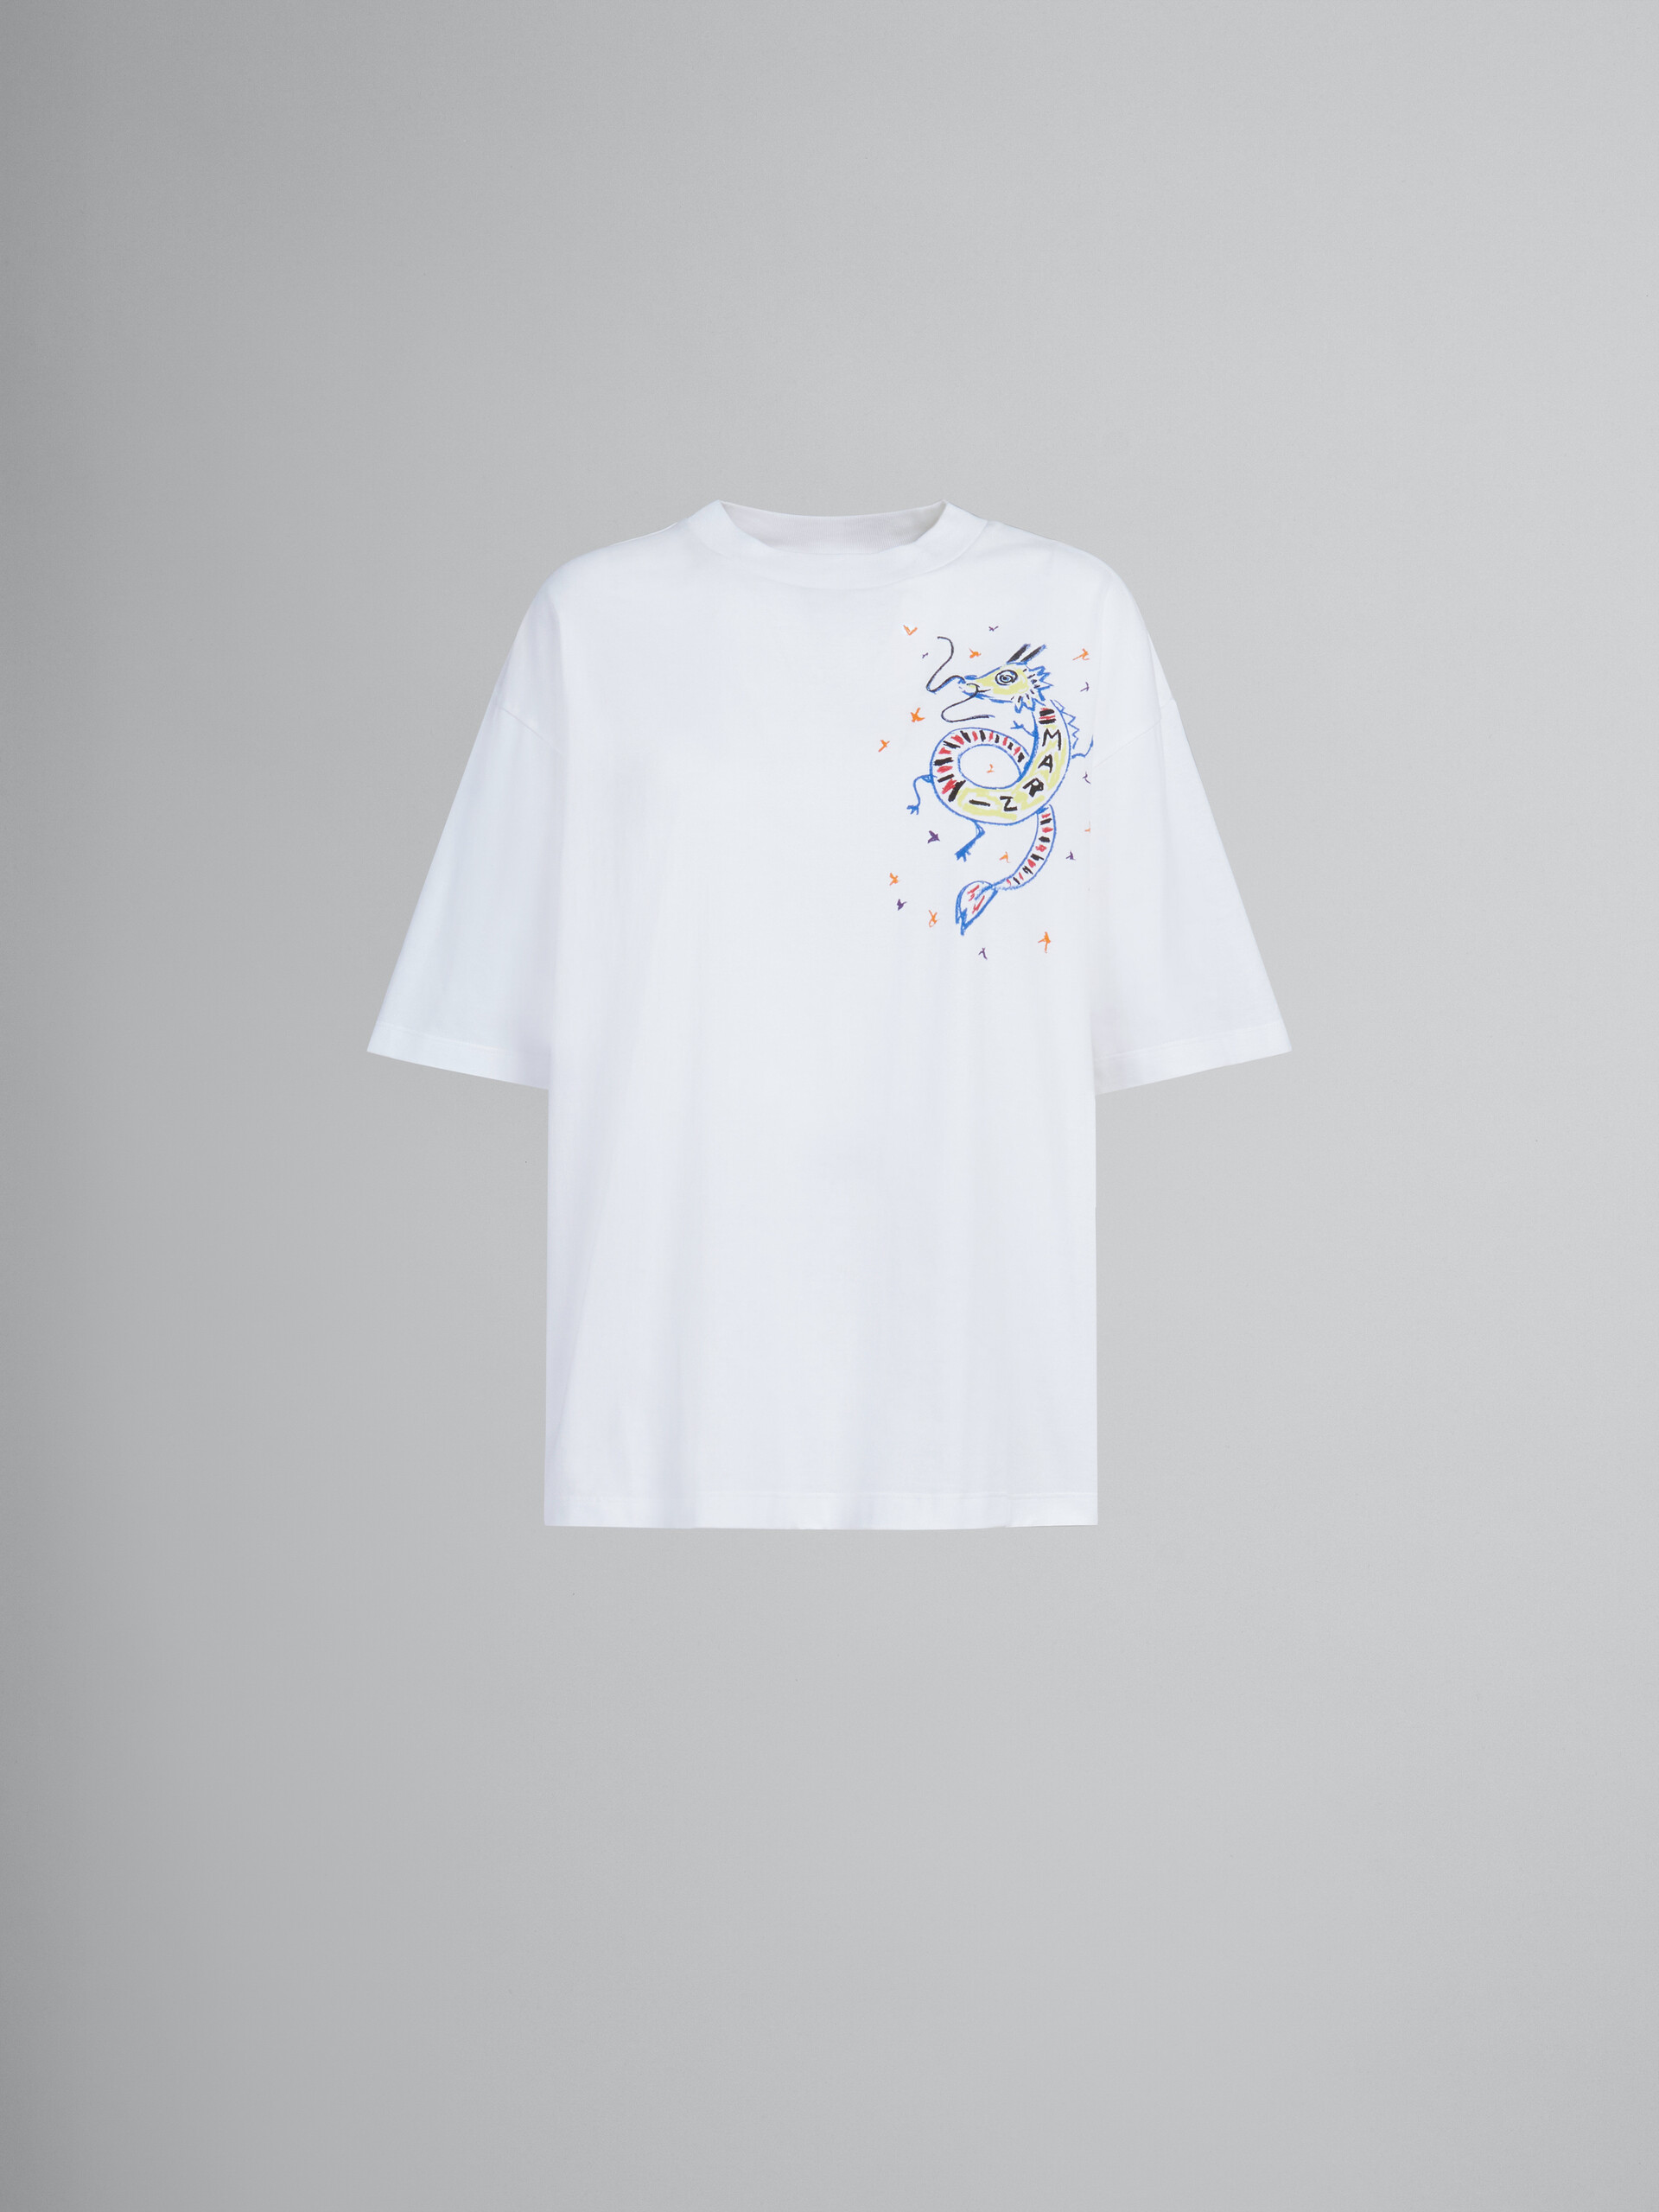 Camiseta blanca de jersey ecológico con estampado de dragón - Camisetas - Image 1